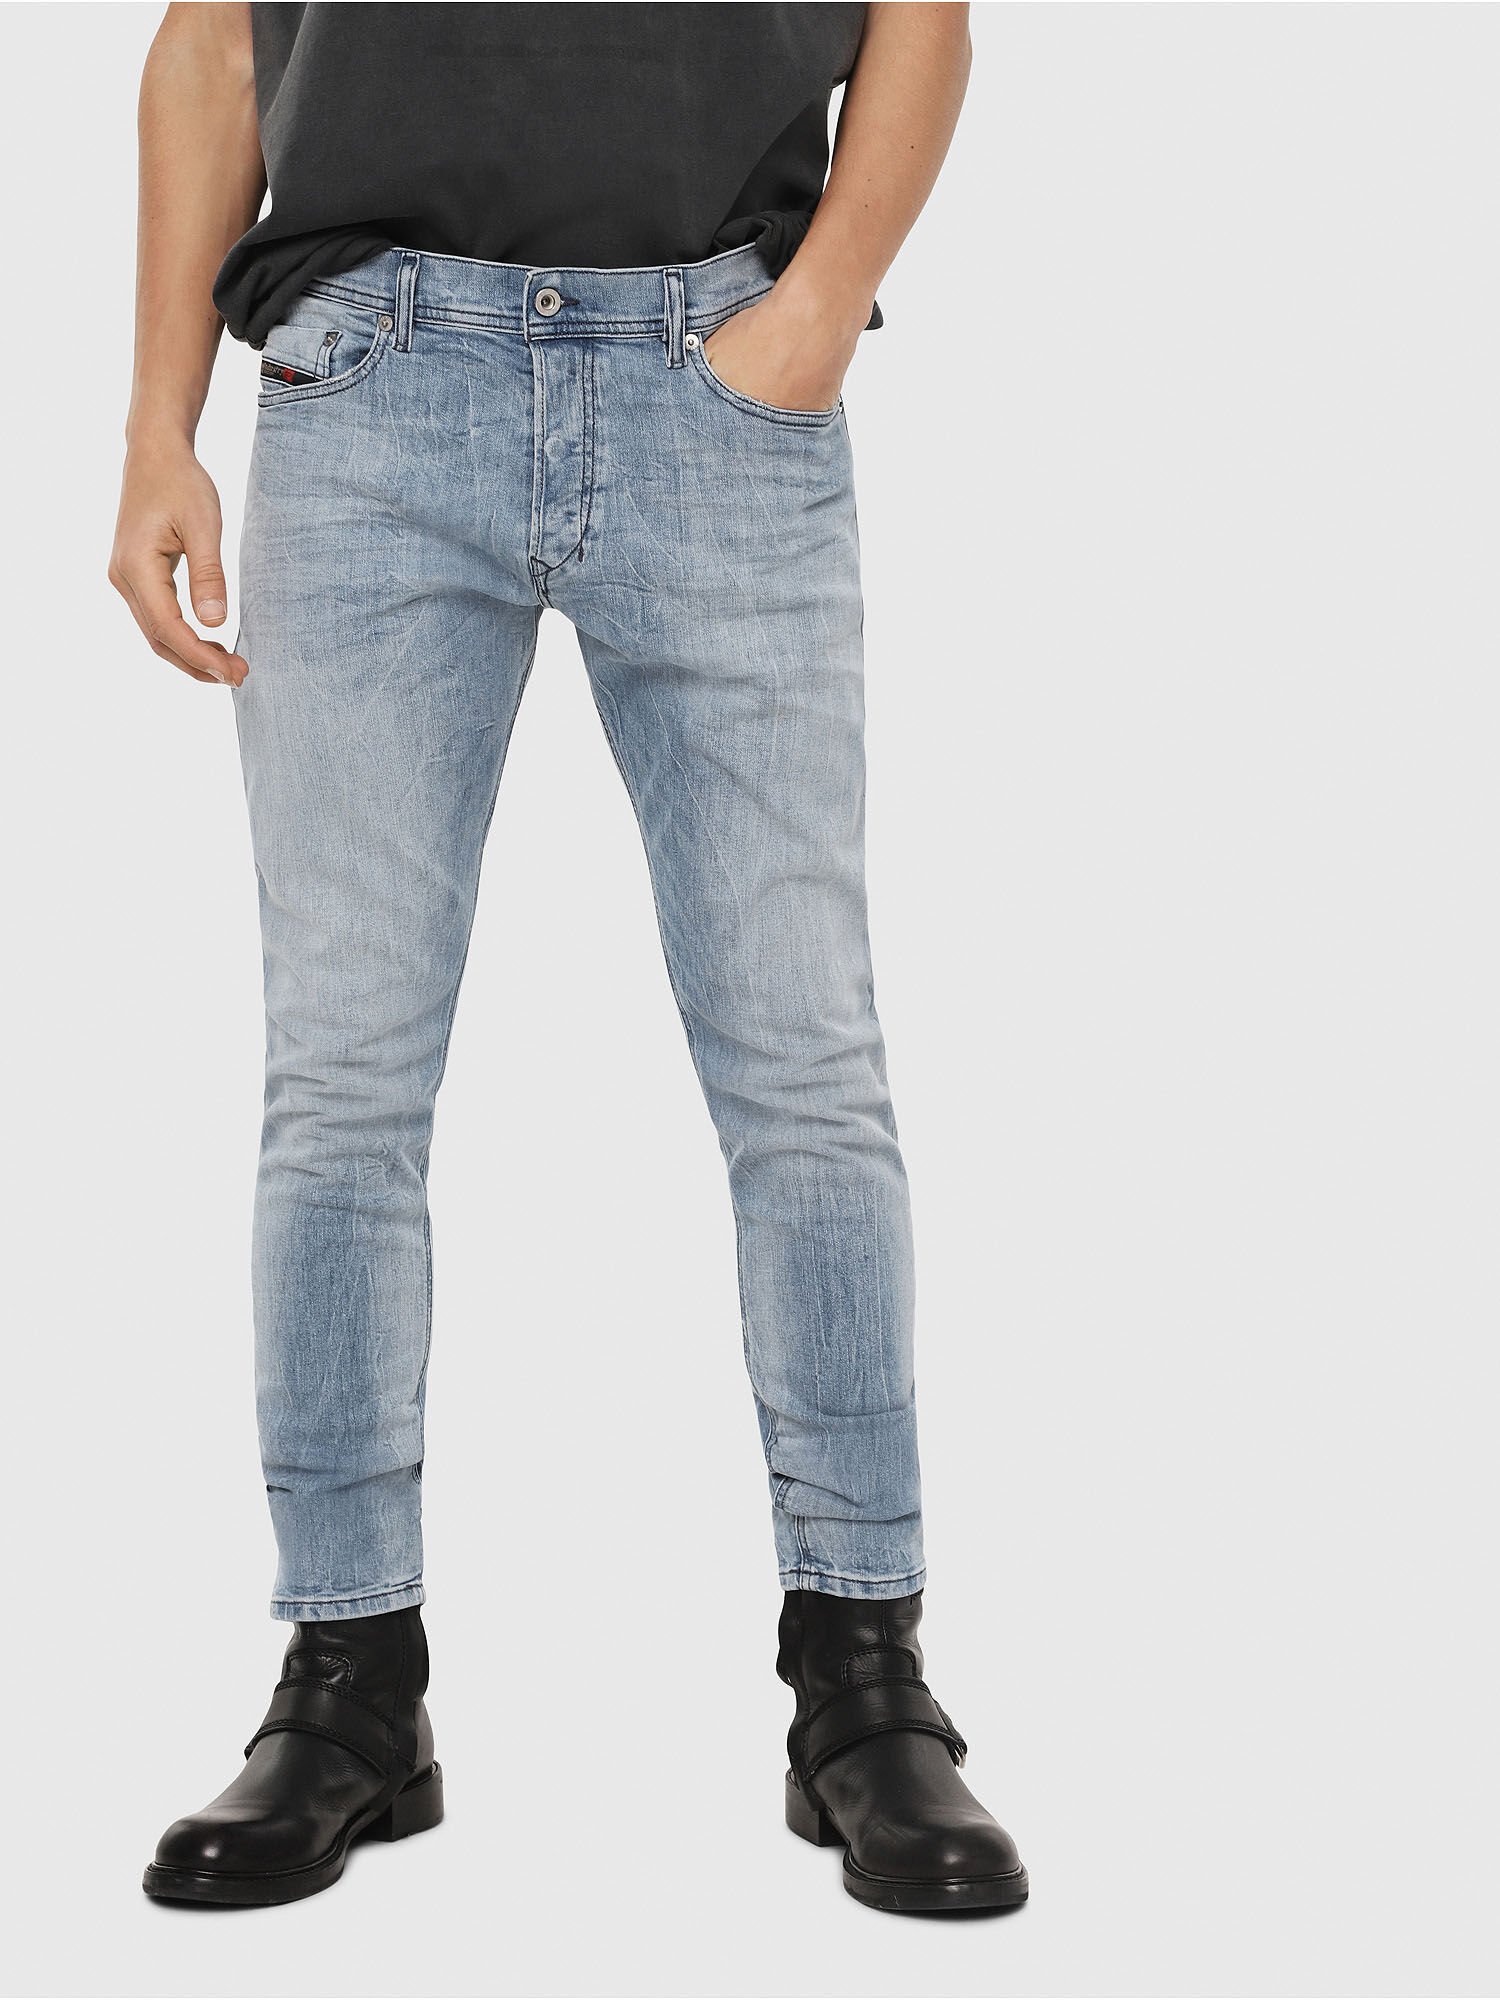 levis jeans s40197